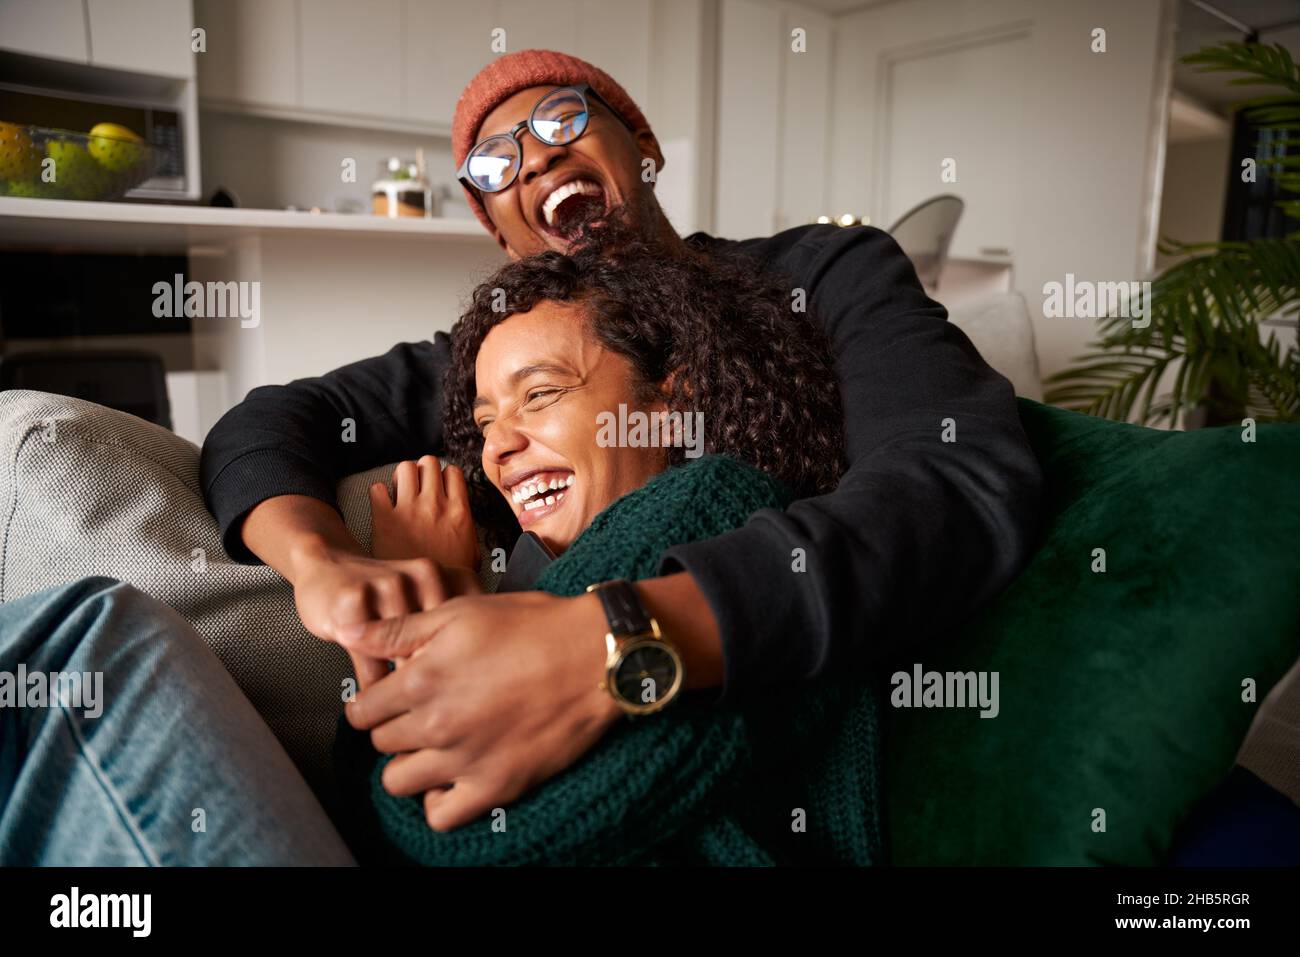 Un couple multiethnique tendance, assis sur un canapé, rit hystériquement.Photo de haute qualité Banque D'Images